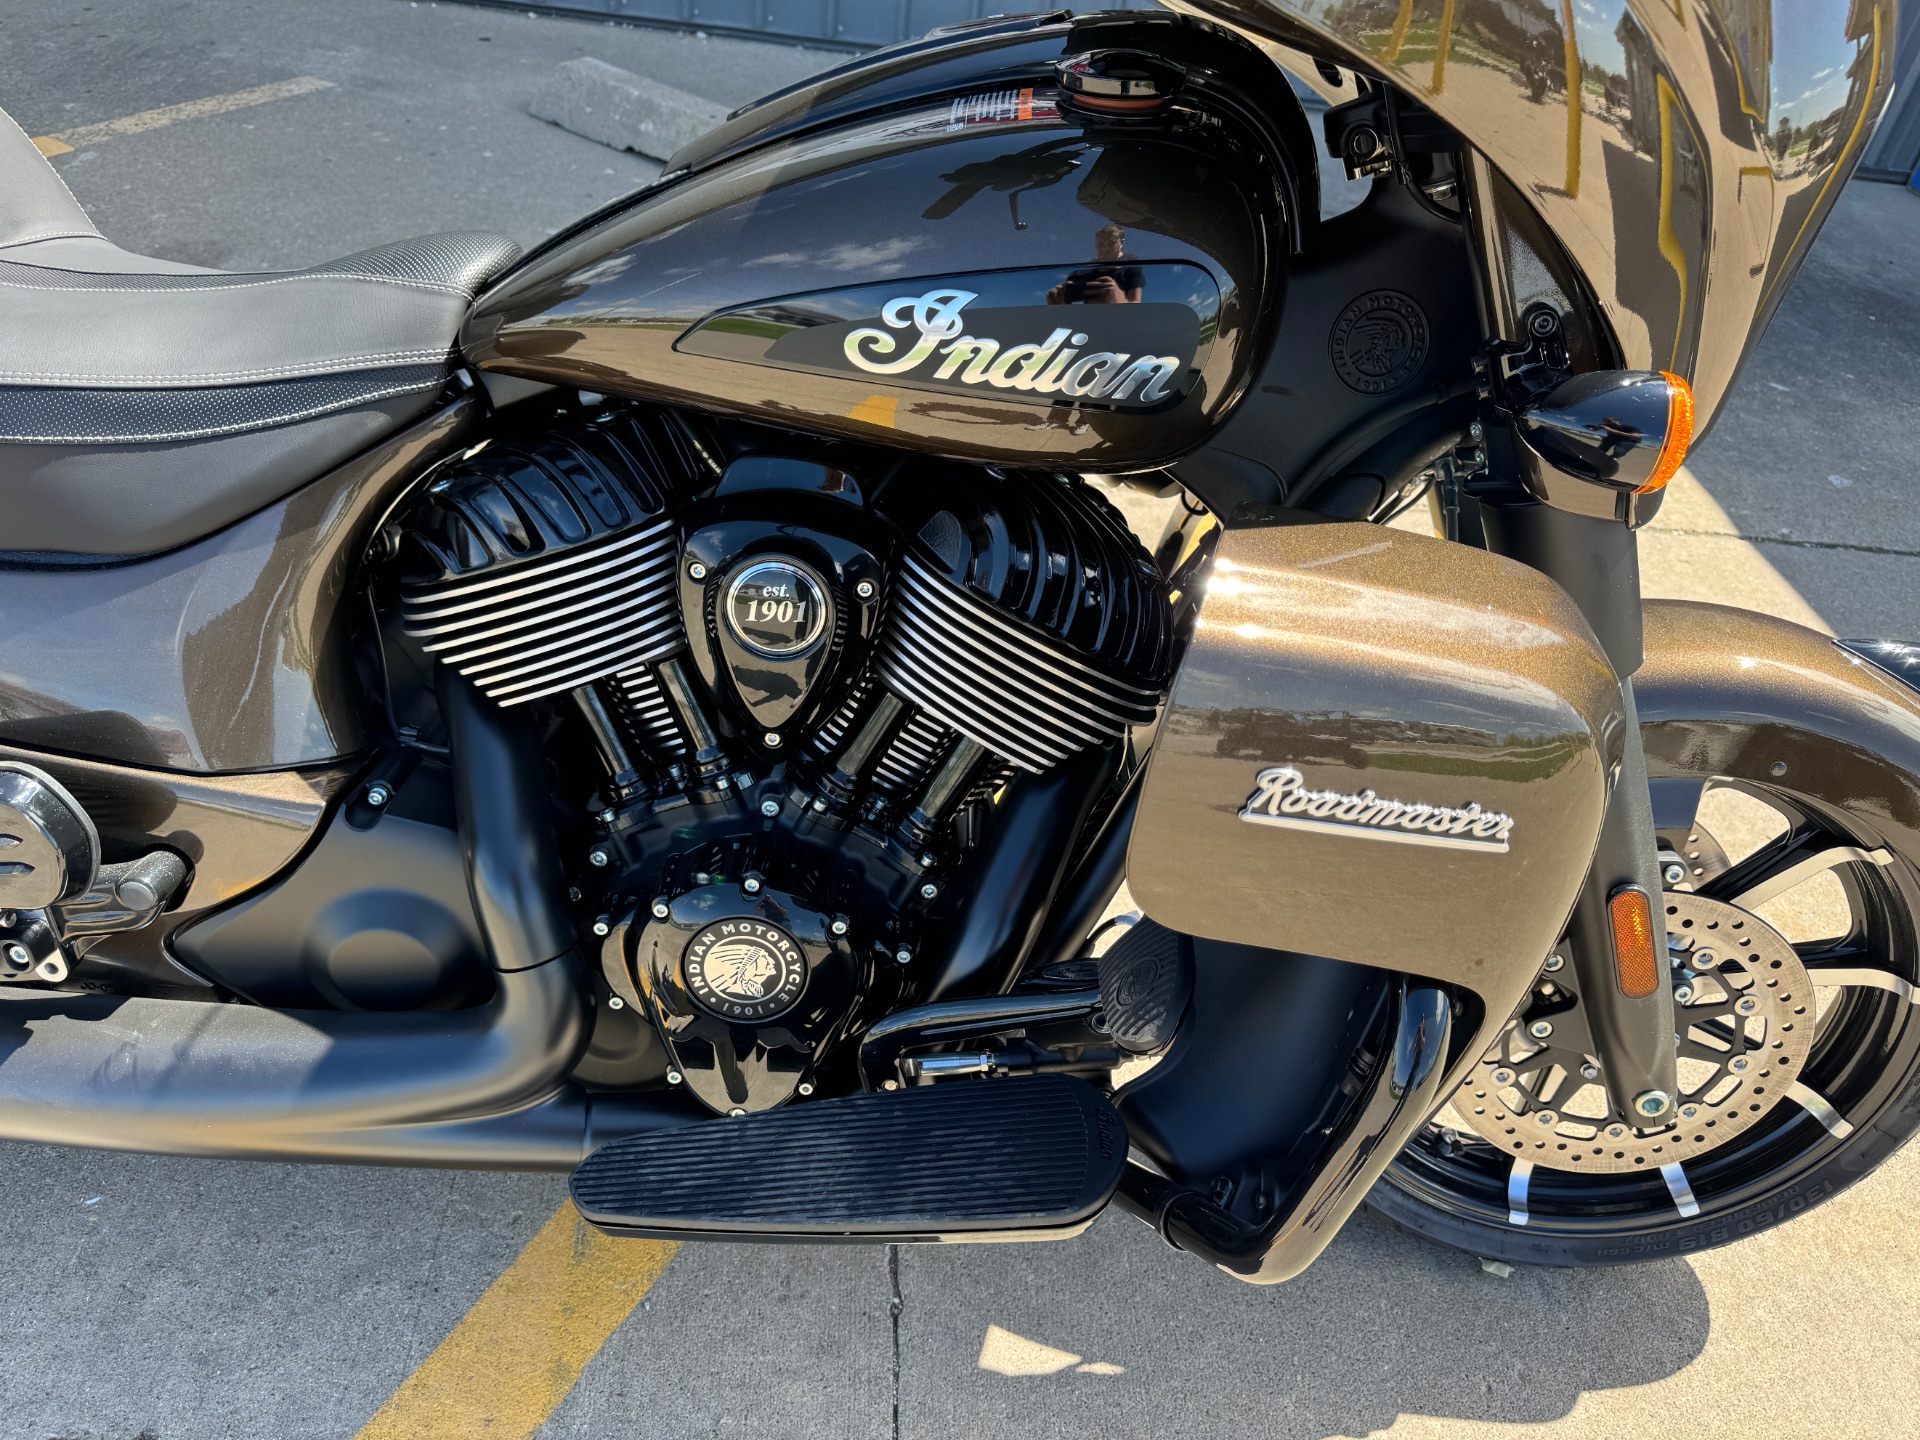 2023 Indian Motorcycle Roadmaster® Dark Horse® in Ottumwa, Iowa - Photo 9